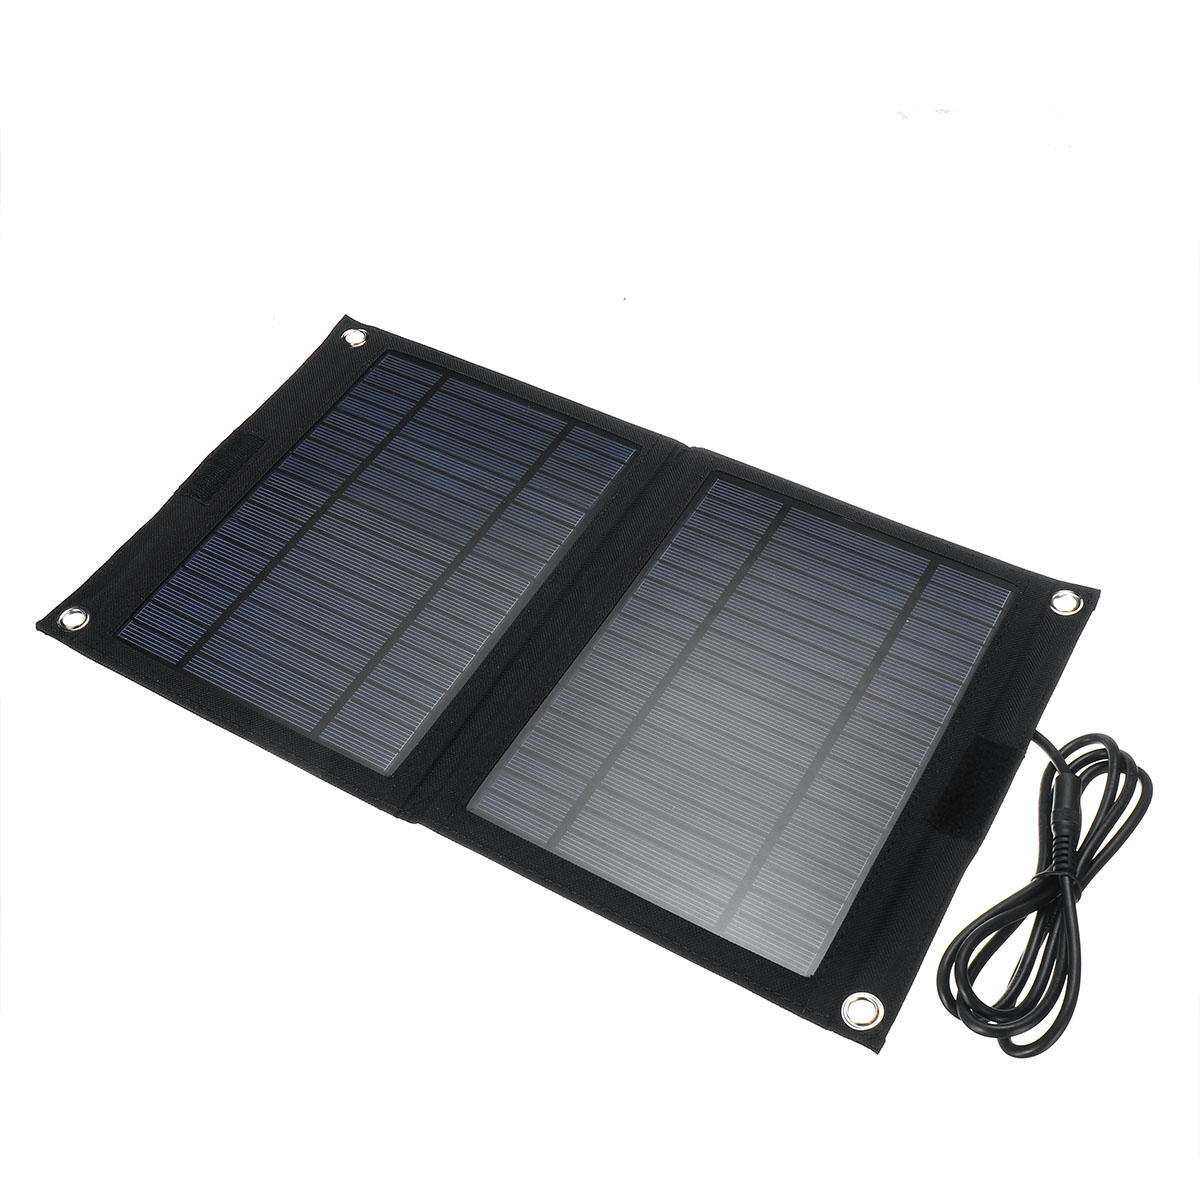 DC 12V/5V USB Portable 25W Solar Panel Mobile Sun-Power Battery Power Charger